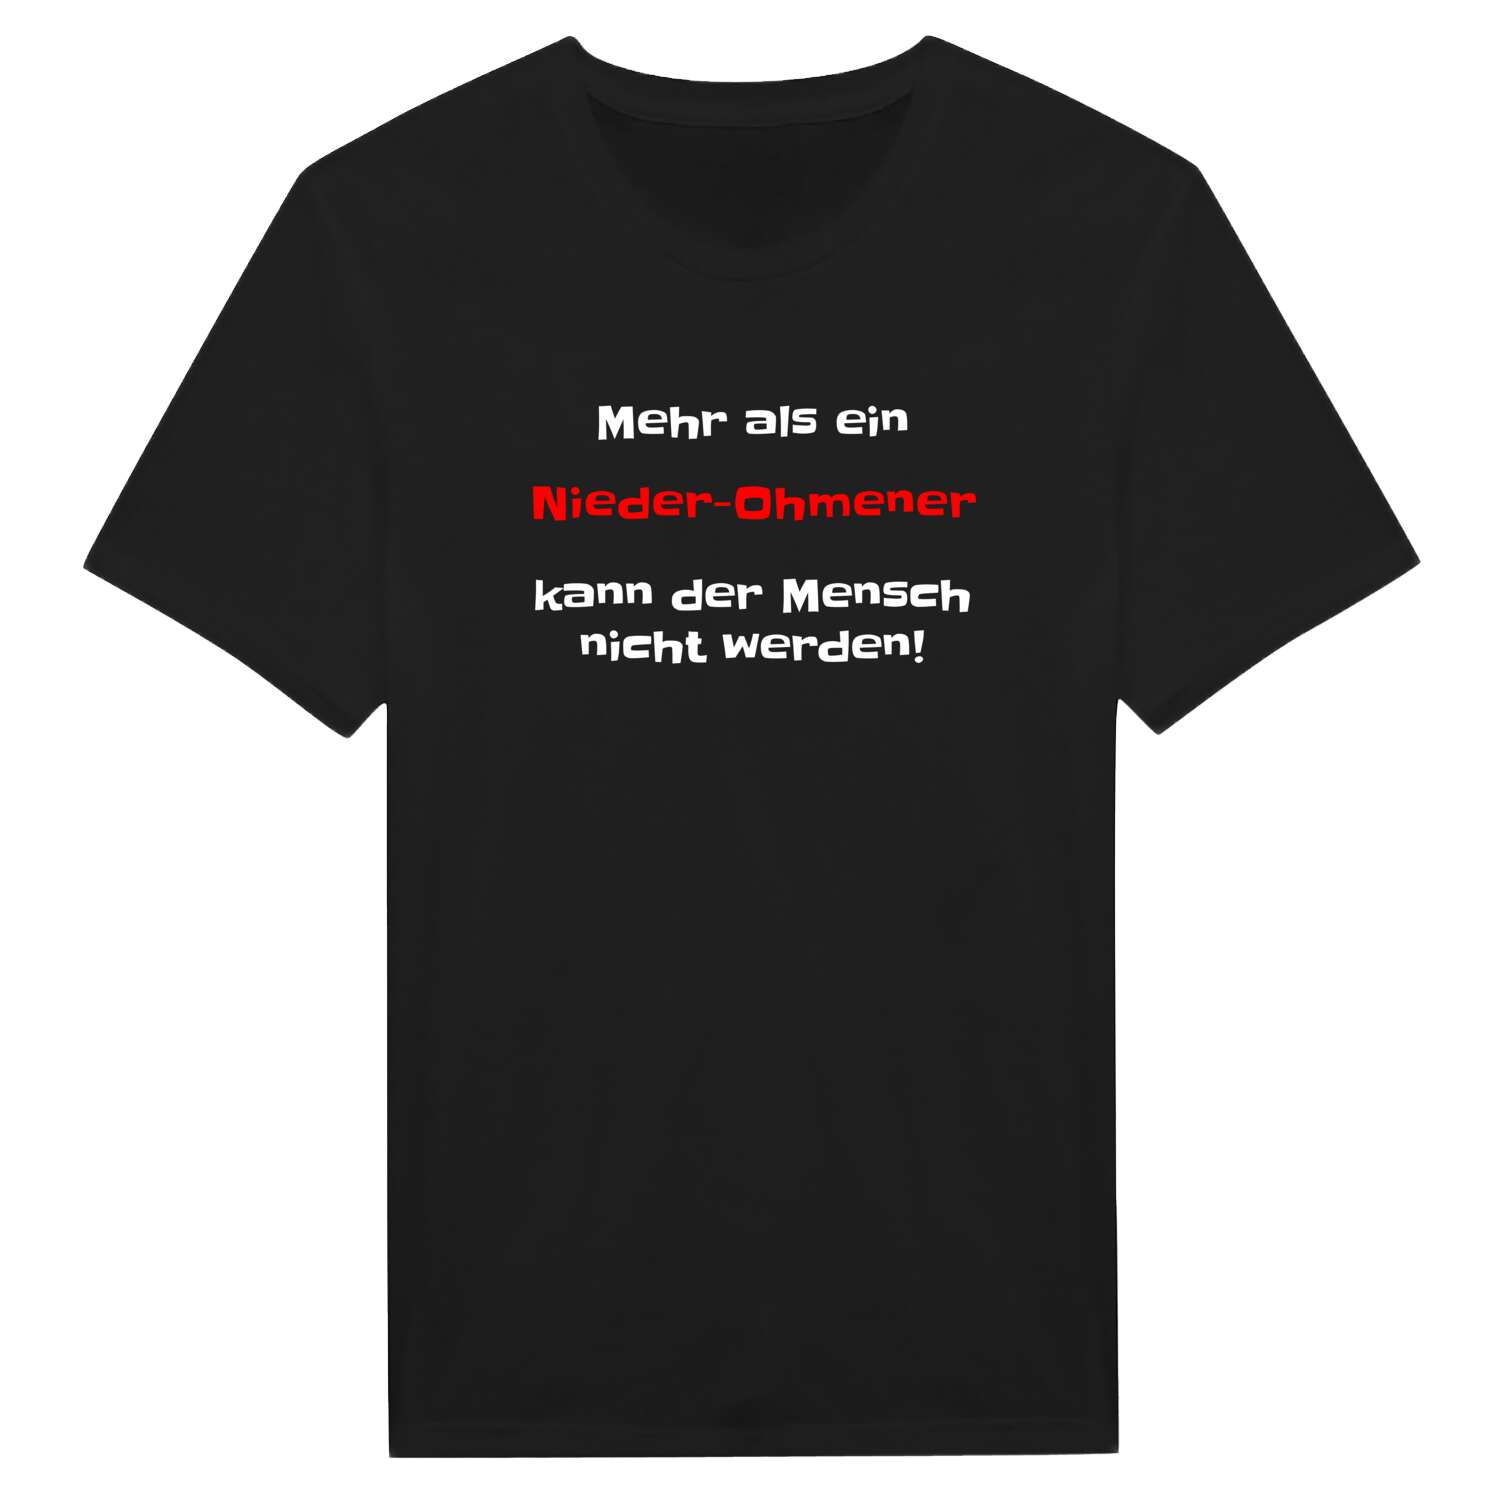 Nieder-Ohmen T-Shirt »Mehr als ein«